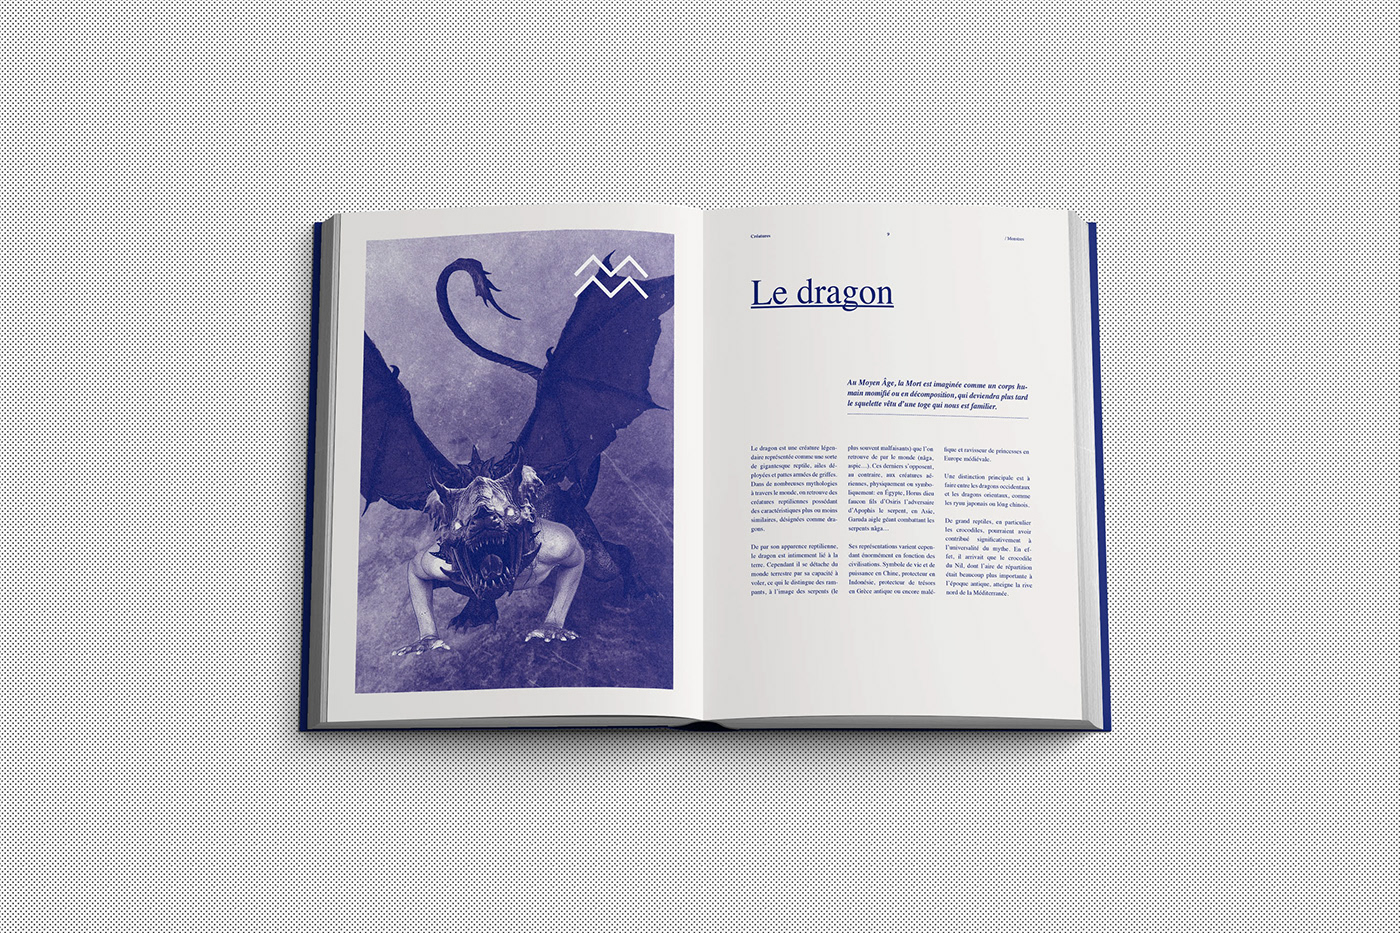 book collage imaginary creature purple monochrome